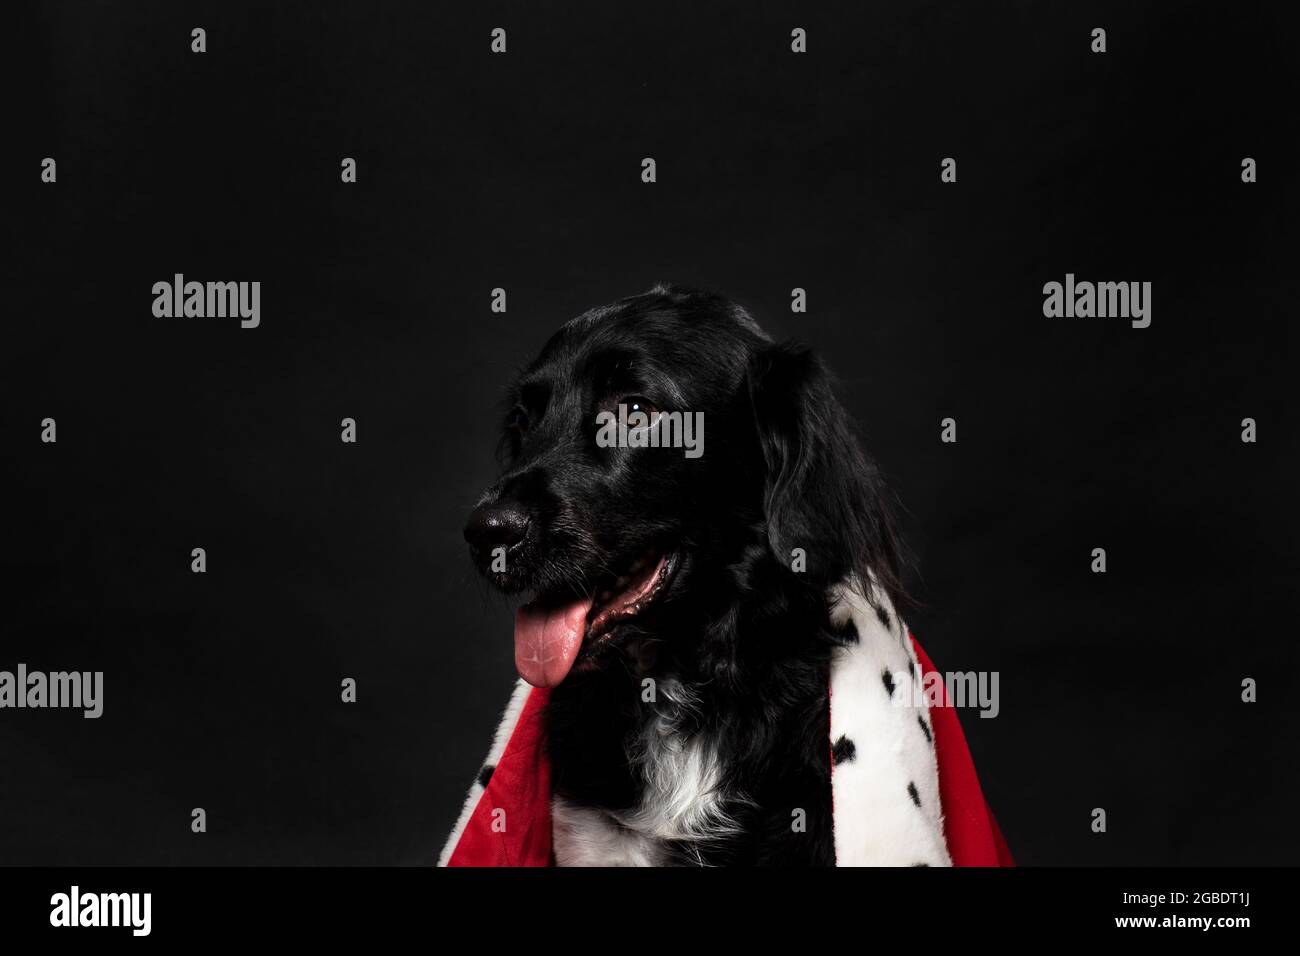 Royal stayhoun Hund trägt einen roten Mantel auf einem dunkelschwarzen Hintergrund. Ein Porträt eines niedlichen holländischen Hundes, der mit seiner tong leicht nach links schaut Stockfoto